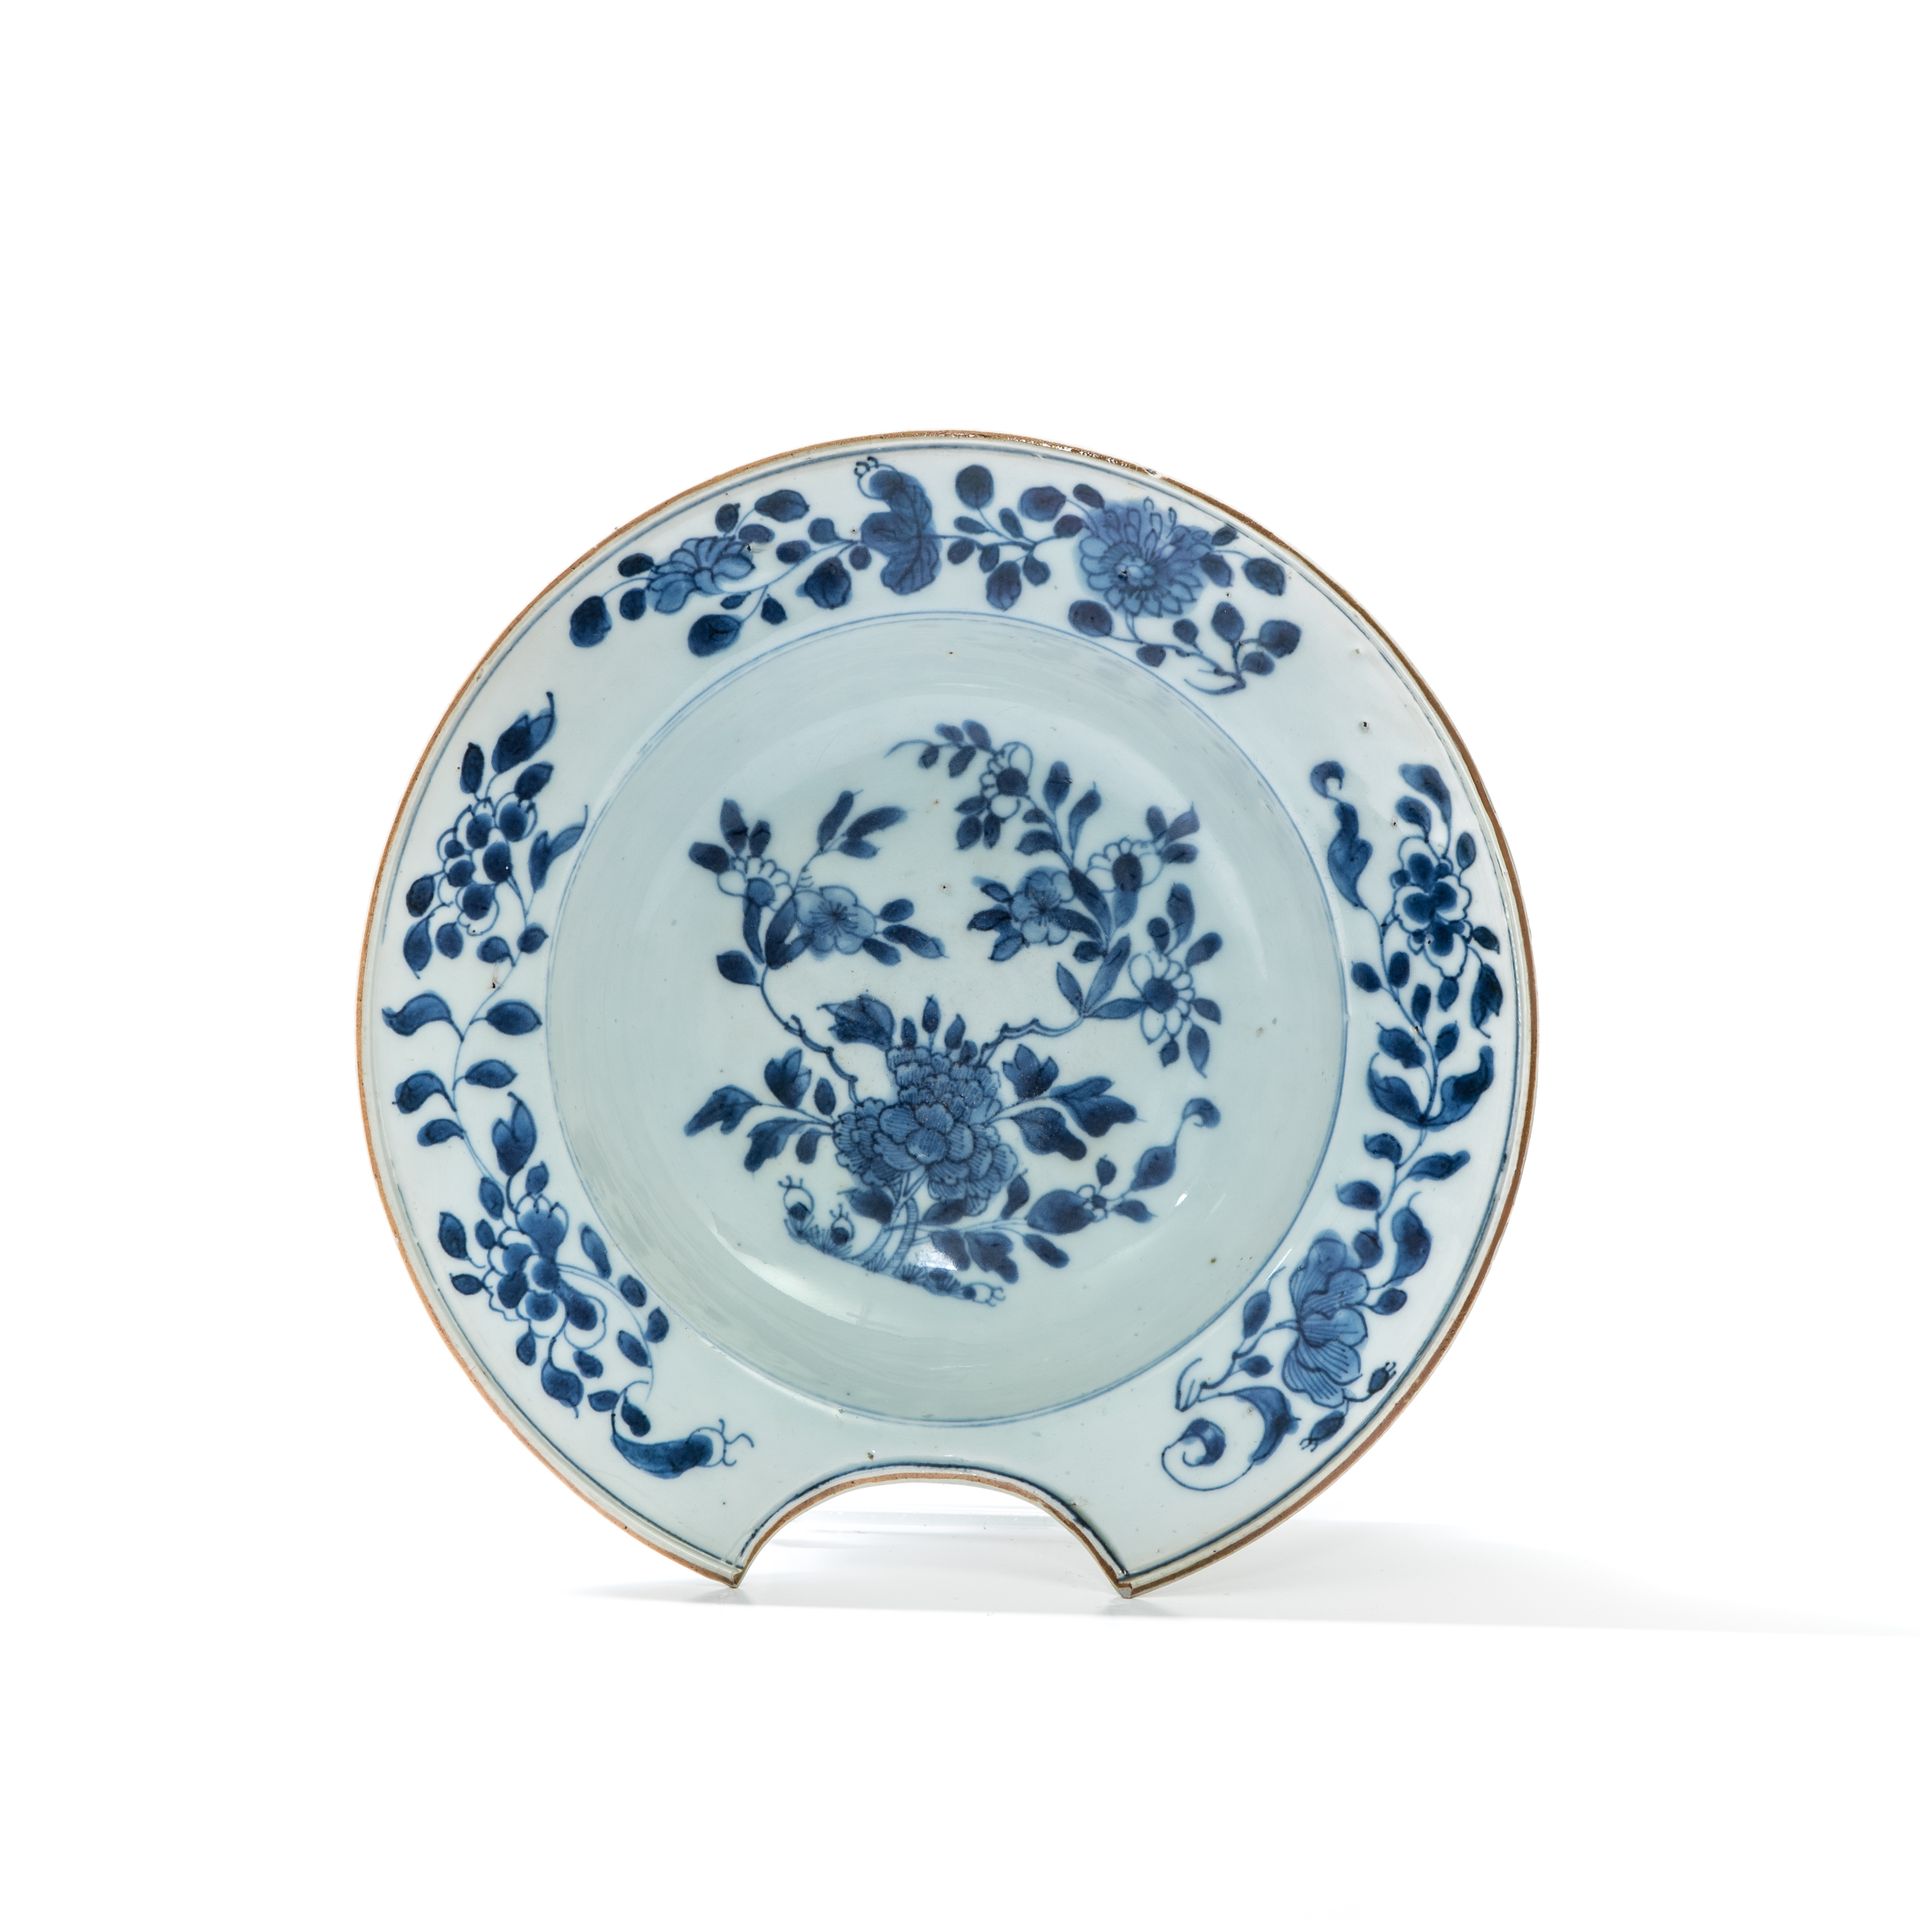 Null 中国，印度公司--乾隆时期（1736-1795）。

胡子菜



瓷盘在釉下青花中装饰有牡丹花枝，翼部装饰有牡丹花枝。



专家：Cabinet &hellip;